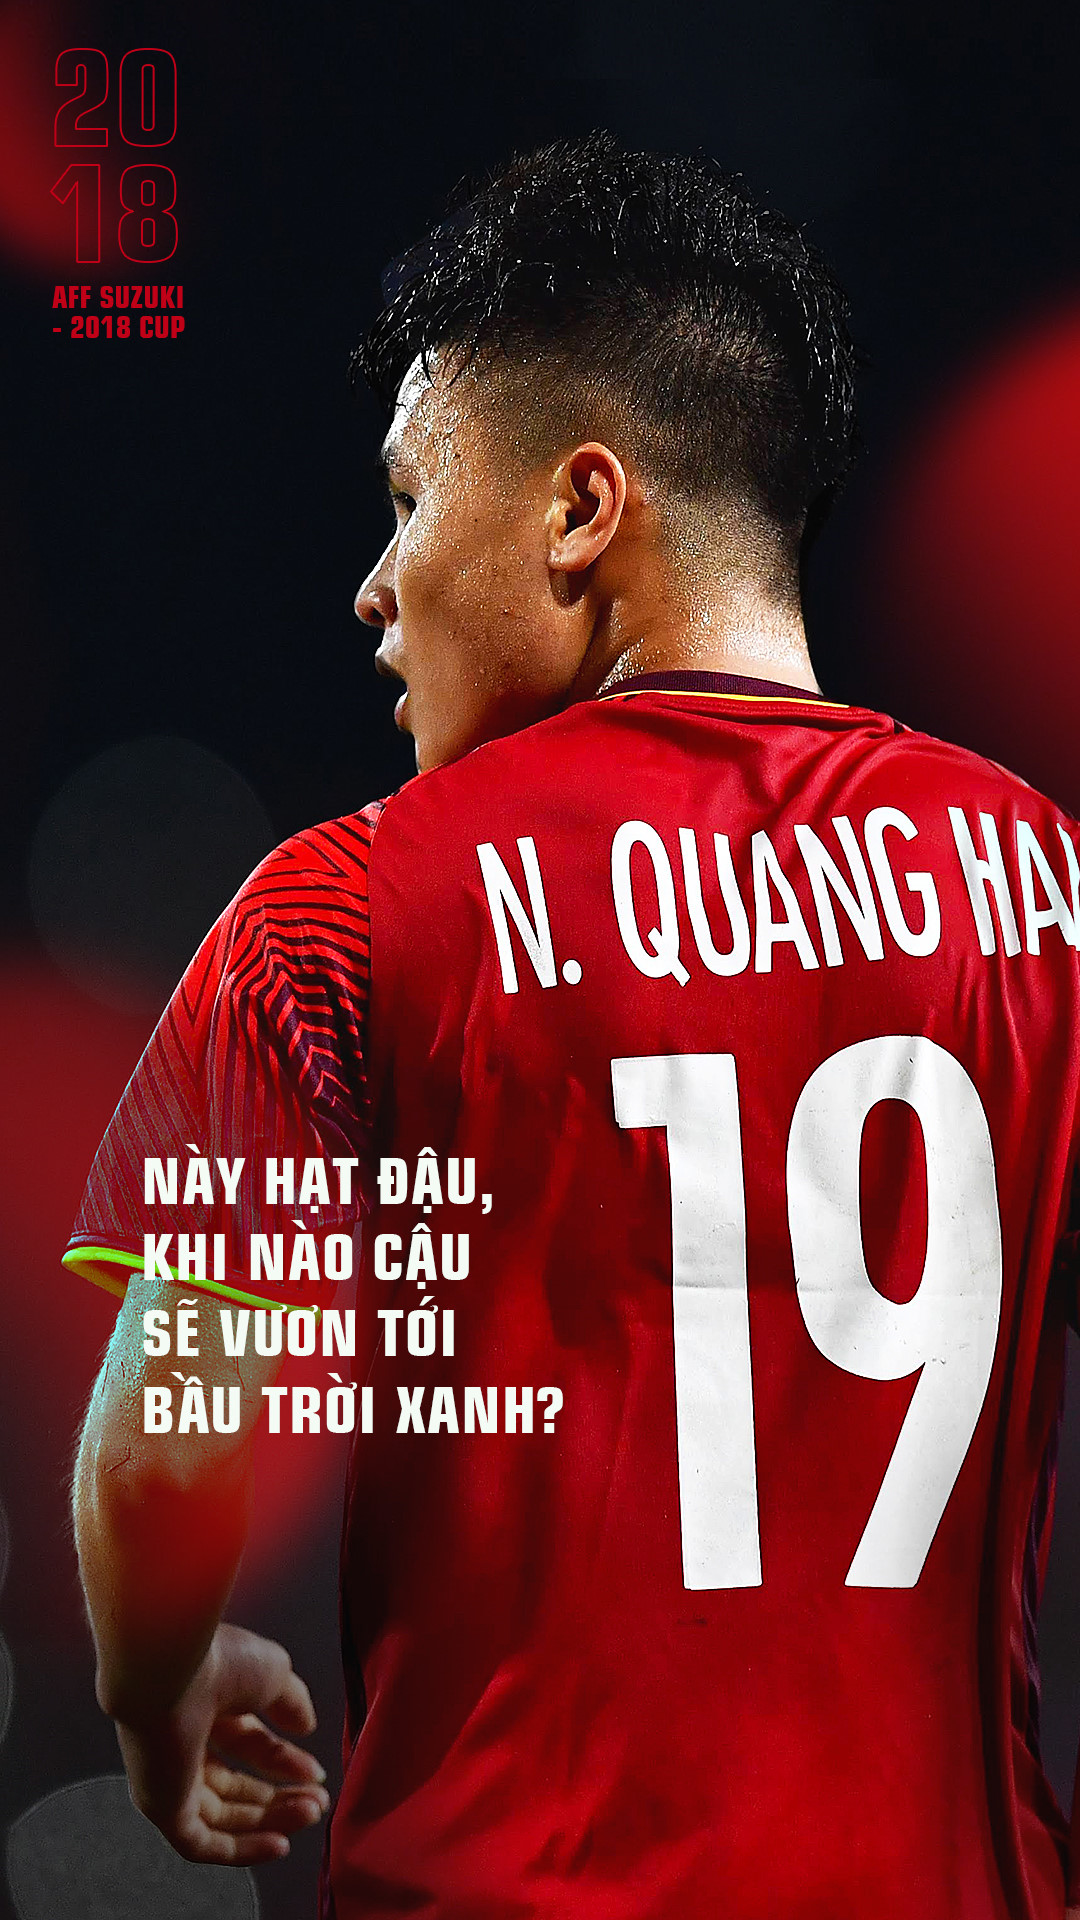 Quang Hải là một cầu thủ đầy tài năng và niềm hy vọng của bóng đá Việt Nam. Những hình nền Quang Hải với hạt đậu và sự vươn tới bầu trời chắc chắn sẽ làm bạn cảm thấy tự tin và năng động hơn trong công việc cũng như cuộc sống.